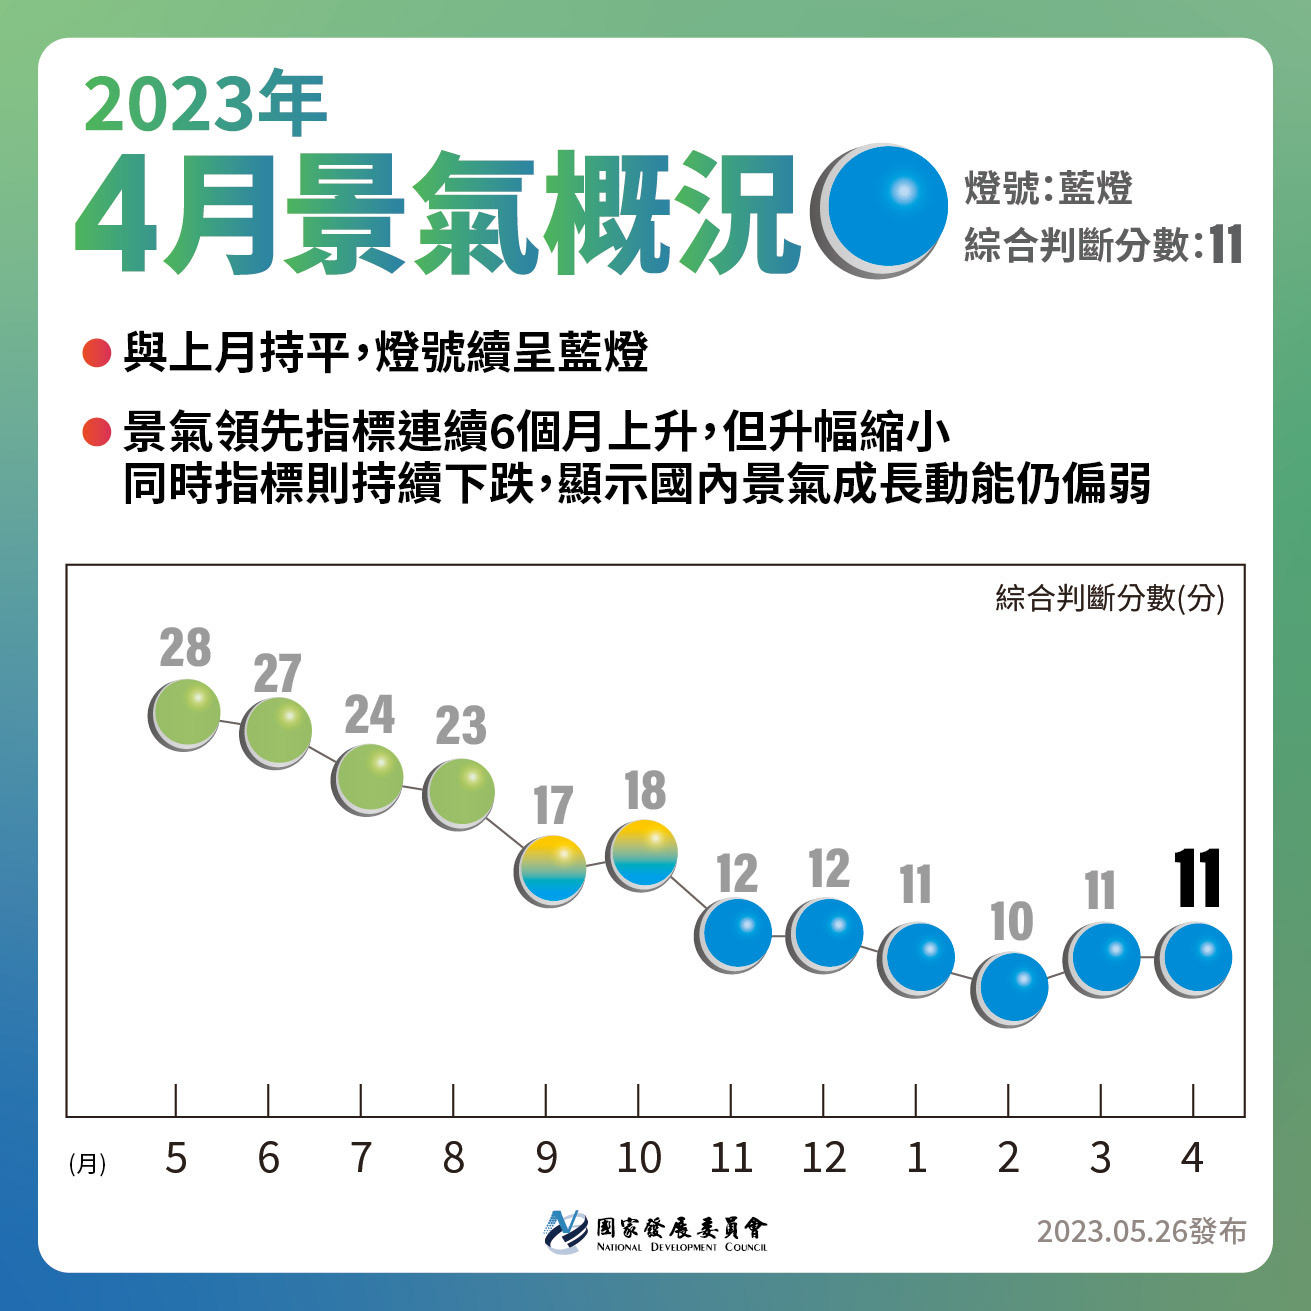 台湾経済:2023年景気信号　(3月更新)